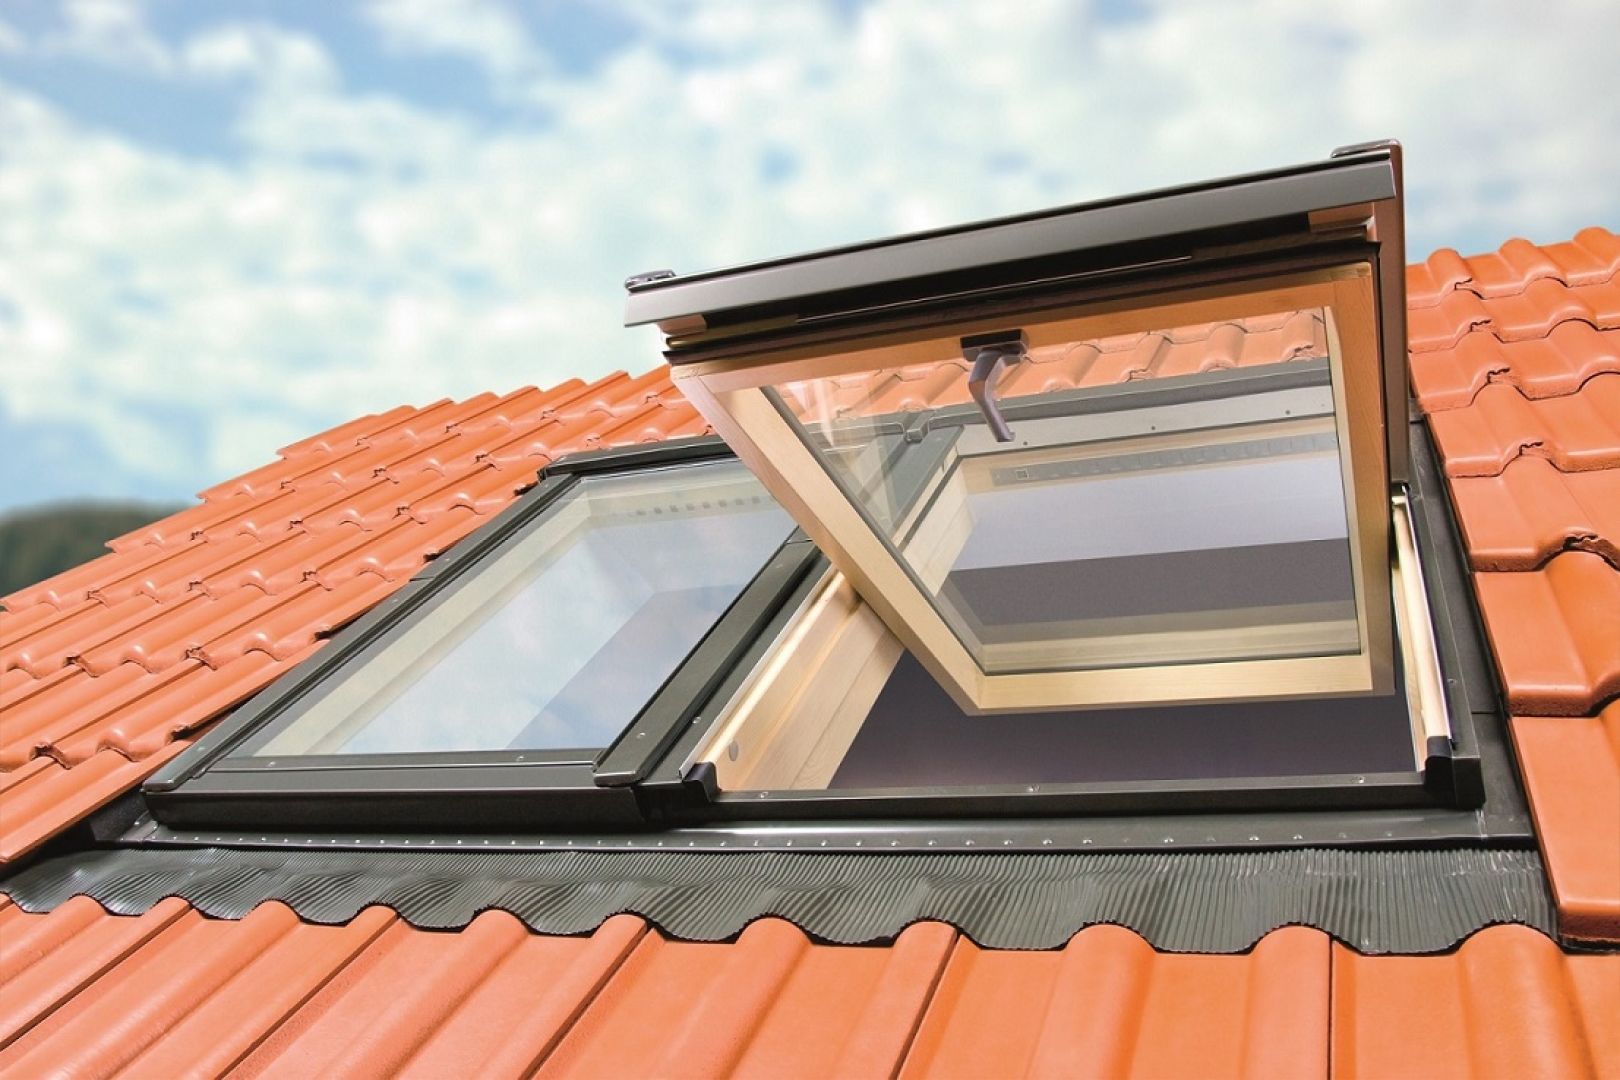 Wymiana okien oraz wykonanie izolacji termicznej domu to nie tylko sposób na osiągnięcie oszczędności, lecz również rozwiązanie zwiększające komfort cieplny domowników. Fot. Fakro